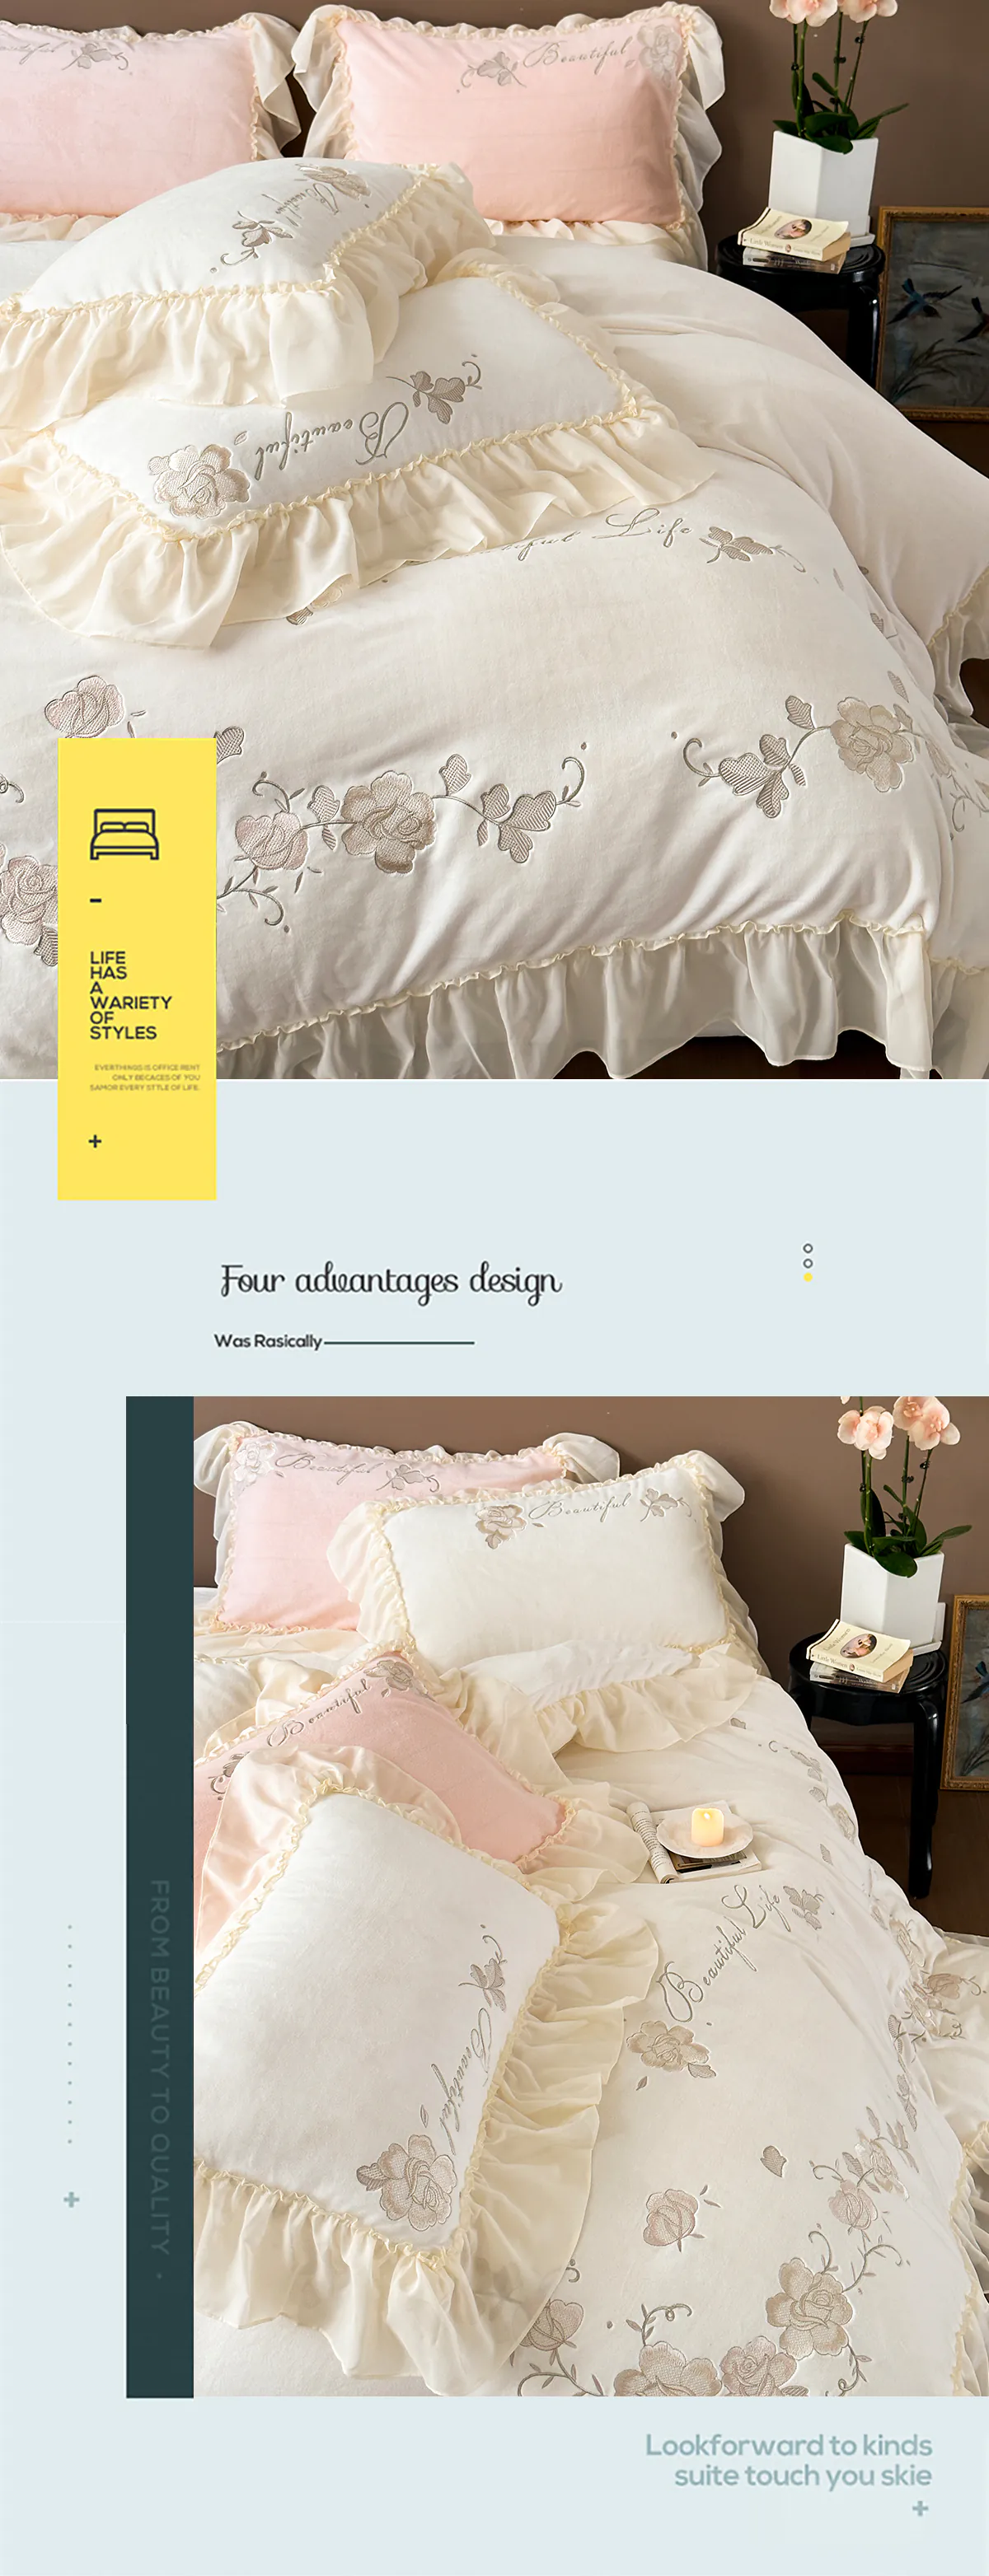 Aesthetic-Soft-Milk-Fiber-Duvet-Cover-Bed-Sheet-Pillowcases-4-Pcs-Set16